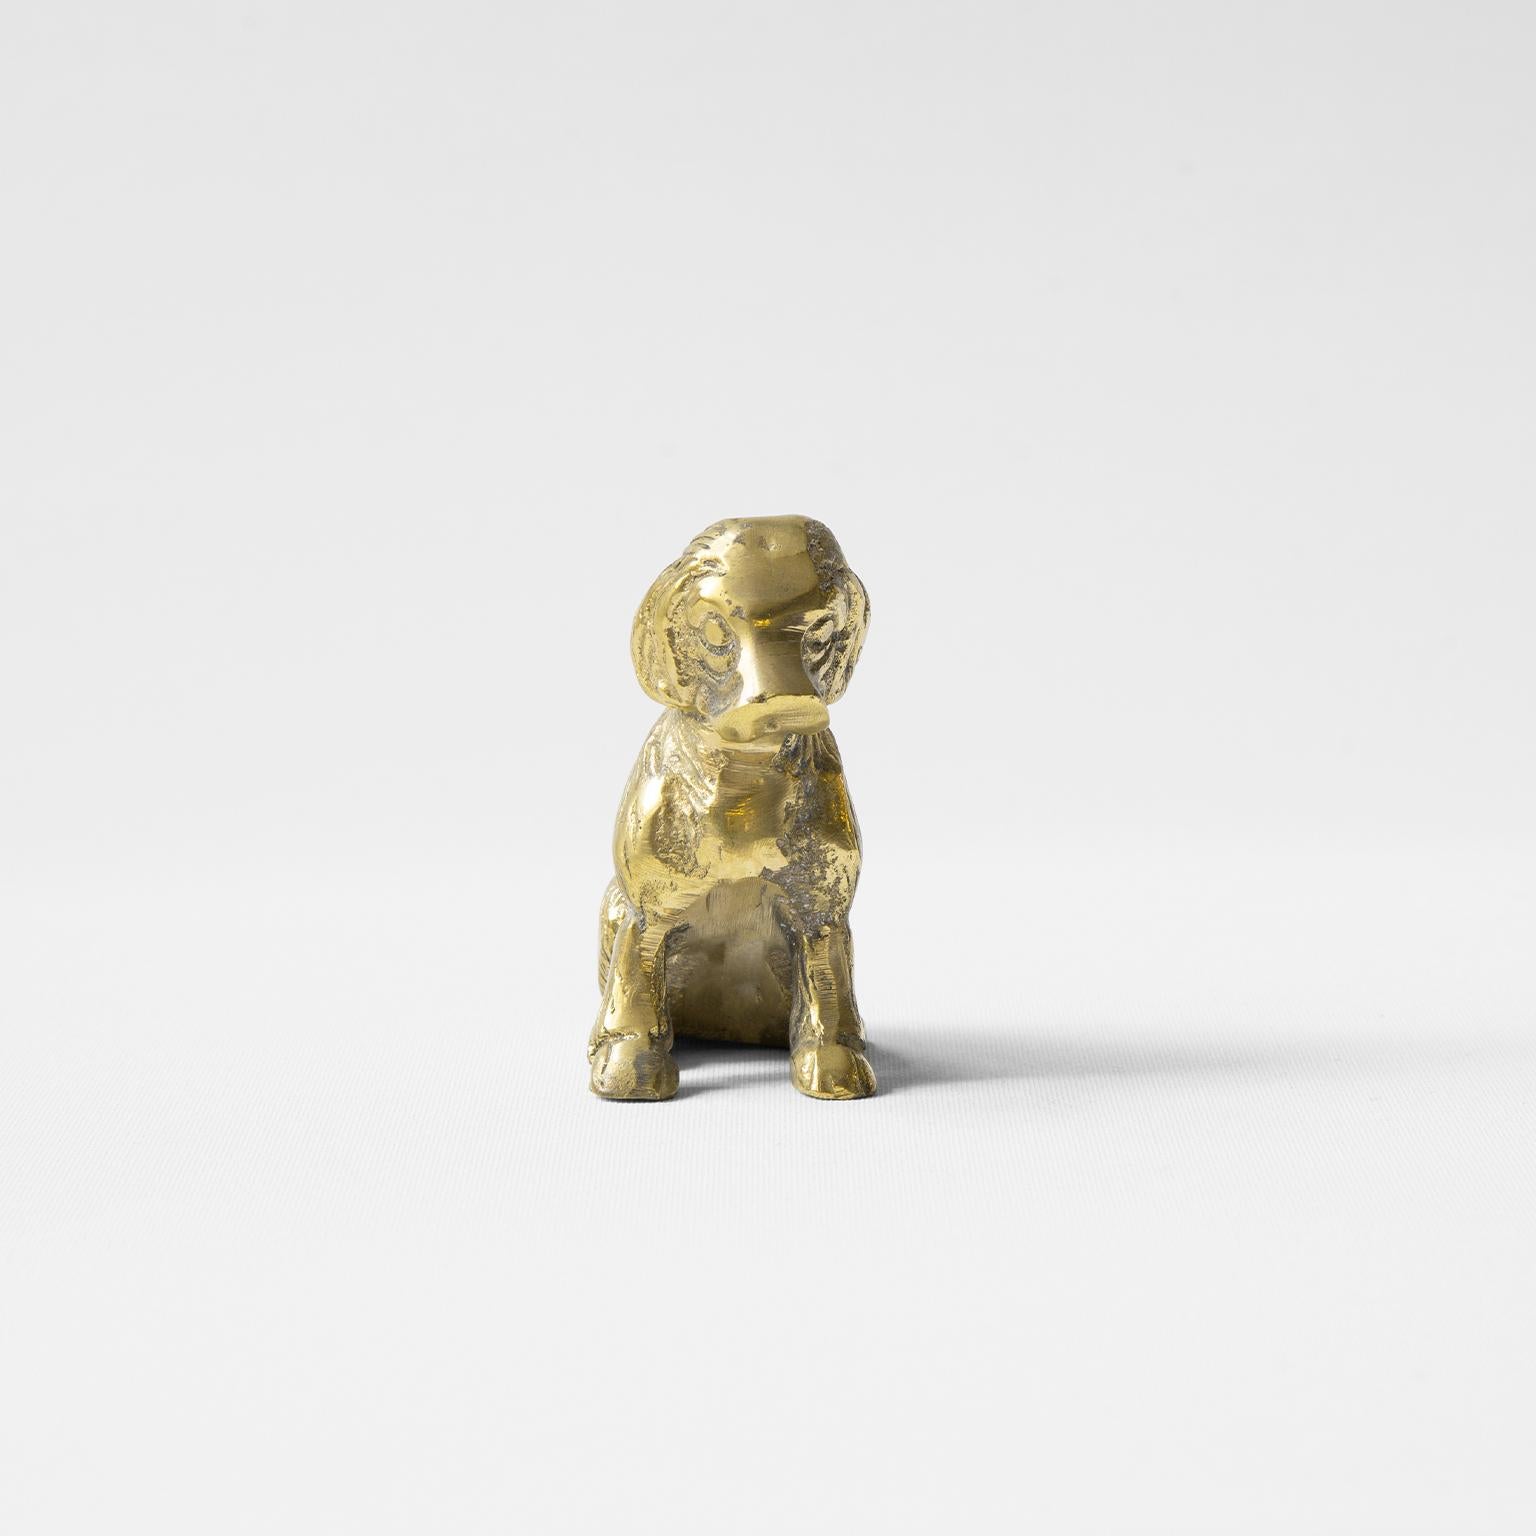 Cast Brass Decorative Object / Dog Mimi